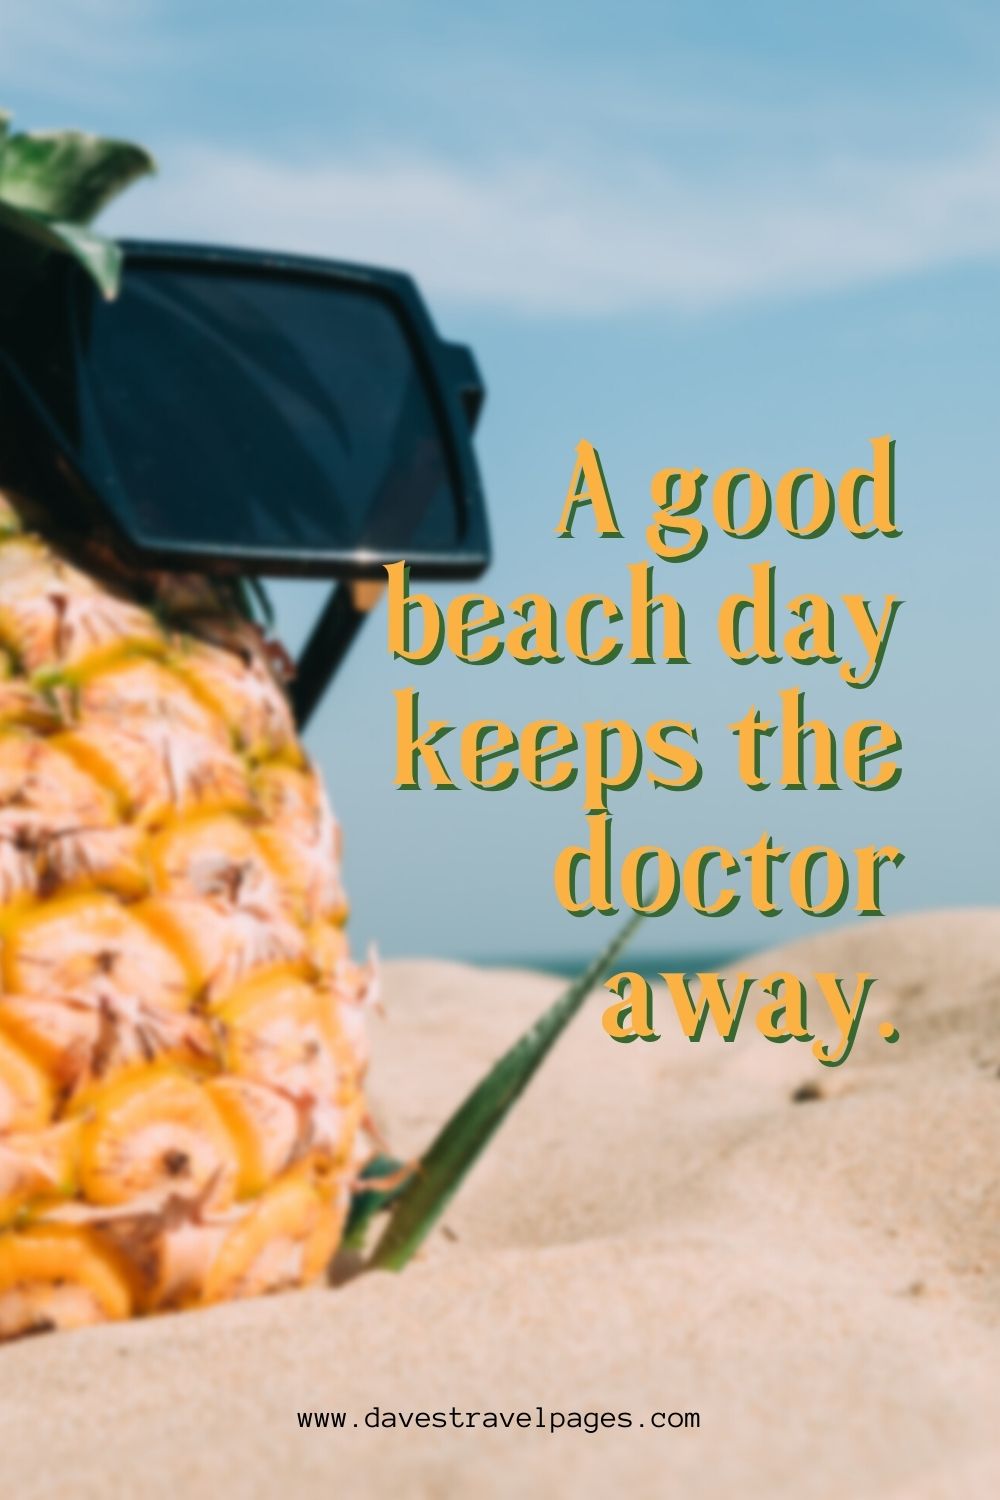 A good beach day keeps the doctor away - Beach Instagram Caption